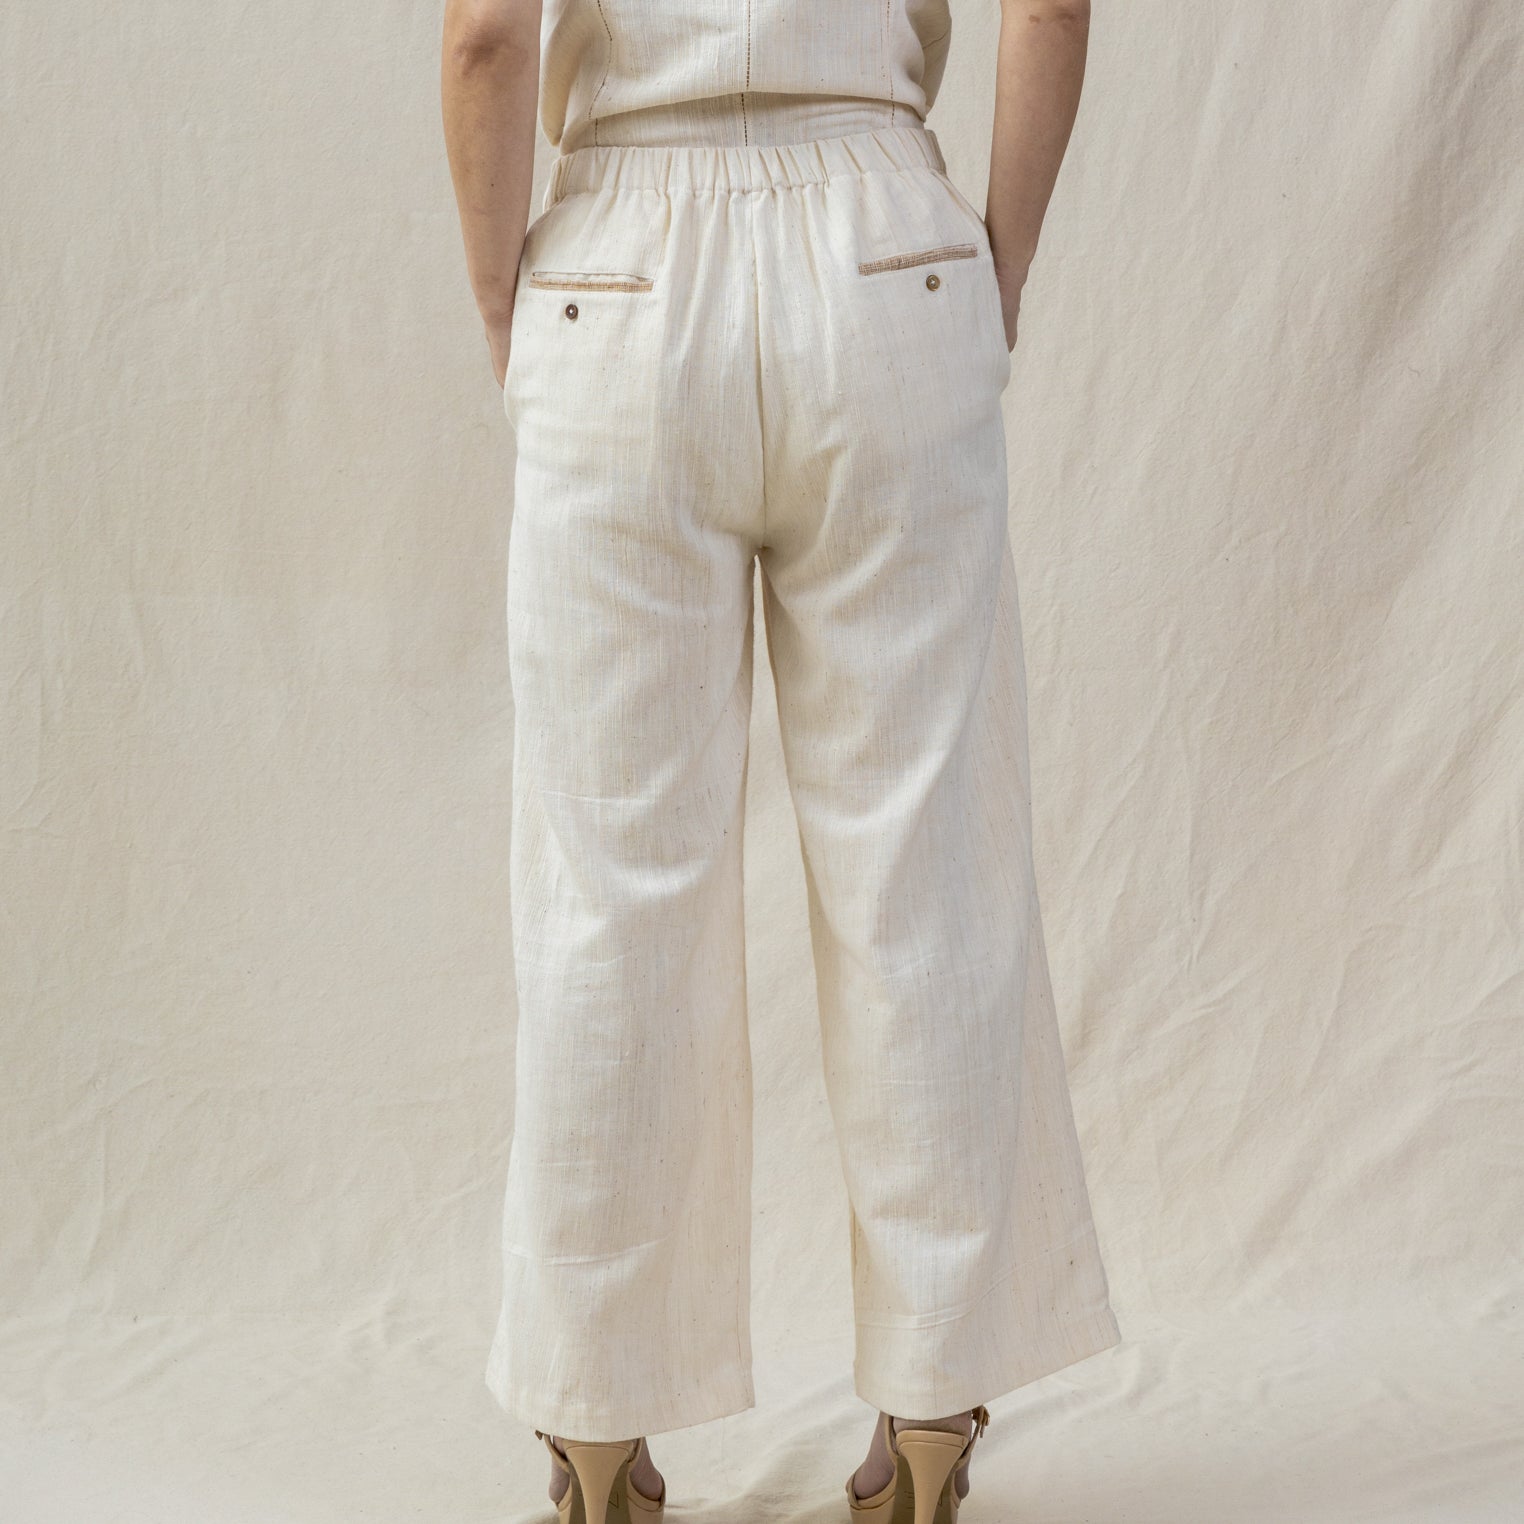 unisex white cotton pants